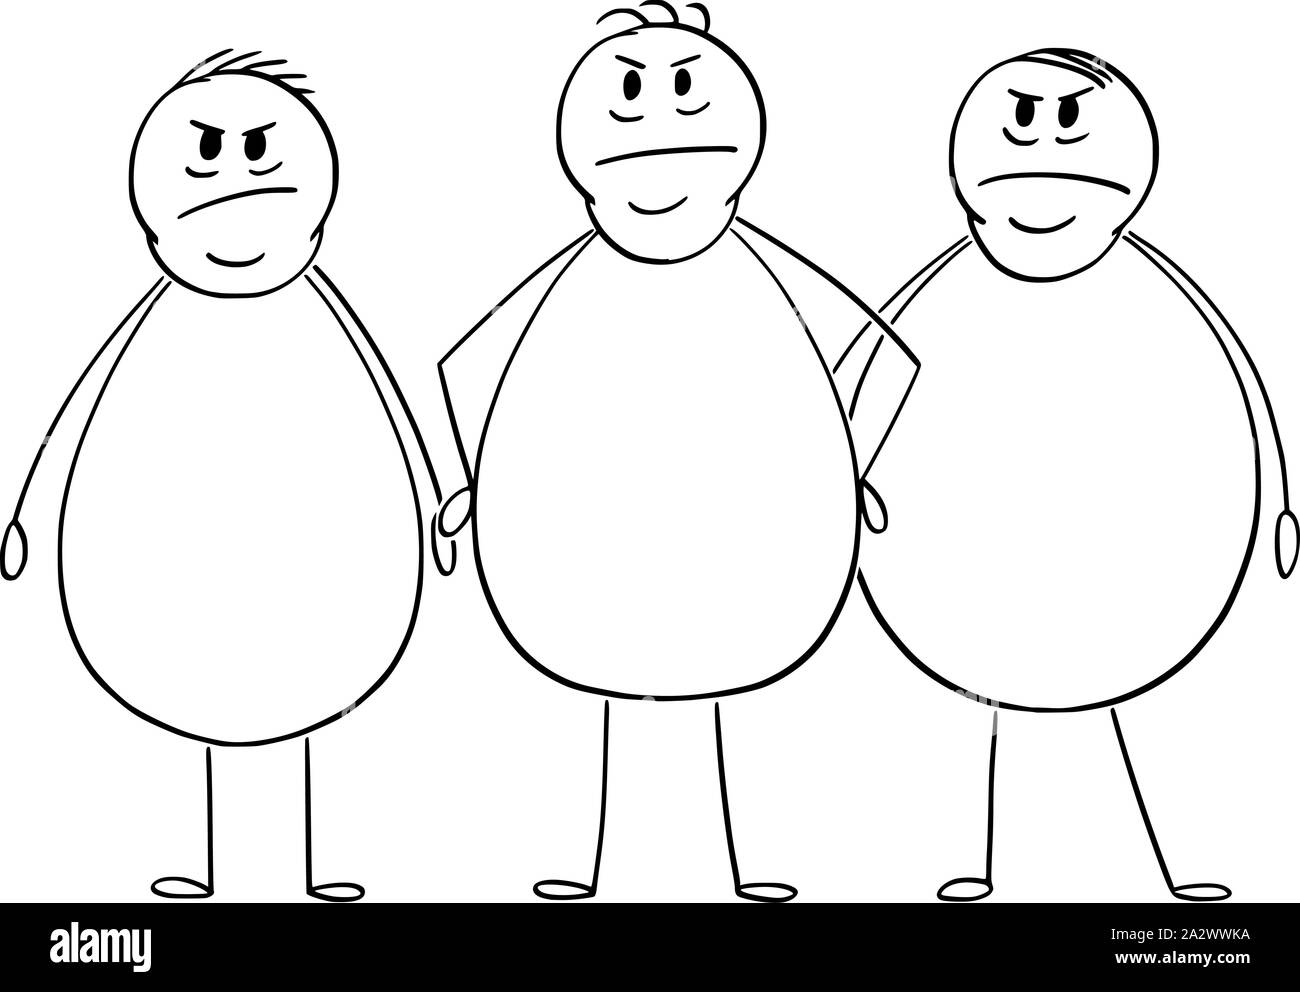 Vektor cartoon Strichmännchen Zeichnen konzeptionelle Darstellung der Gruppe von drei wütend übergewichtig oder Fette Männer. Stock Vektor